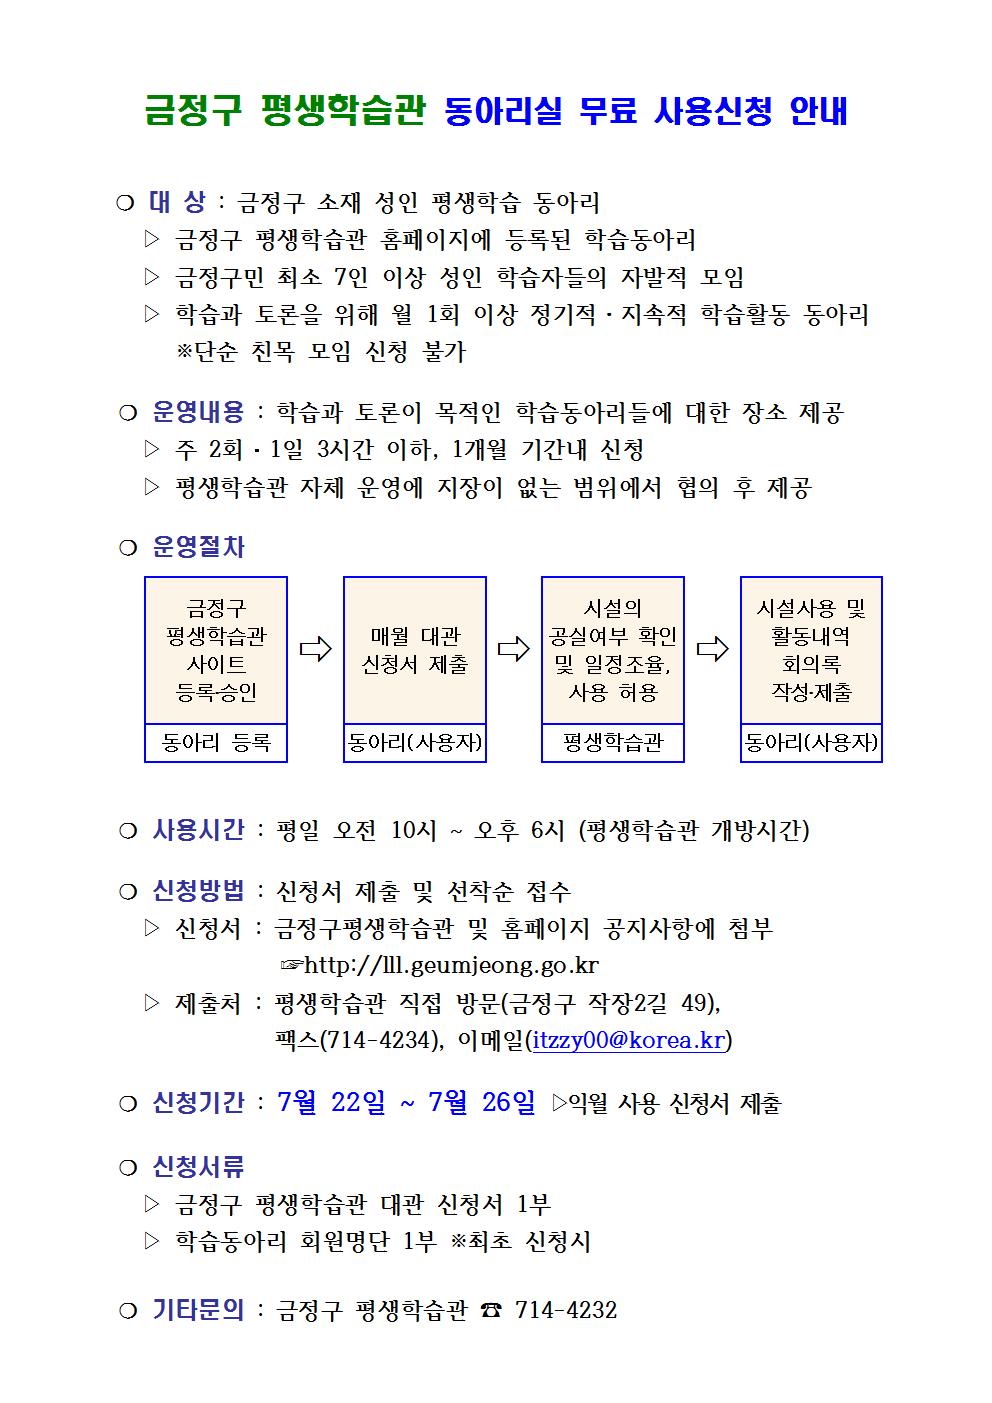 2019. 8월 금정구평생학습관 학습동아리실 대관신청 안내